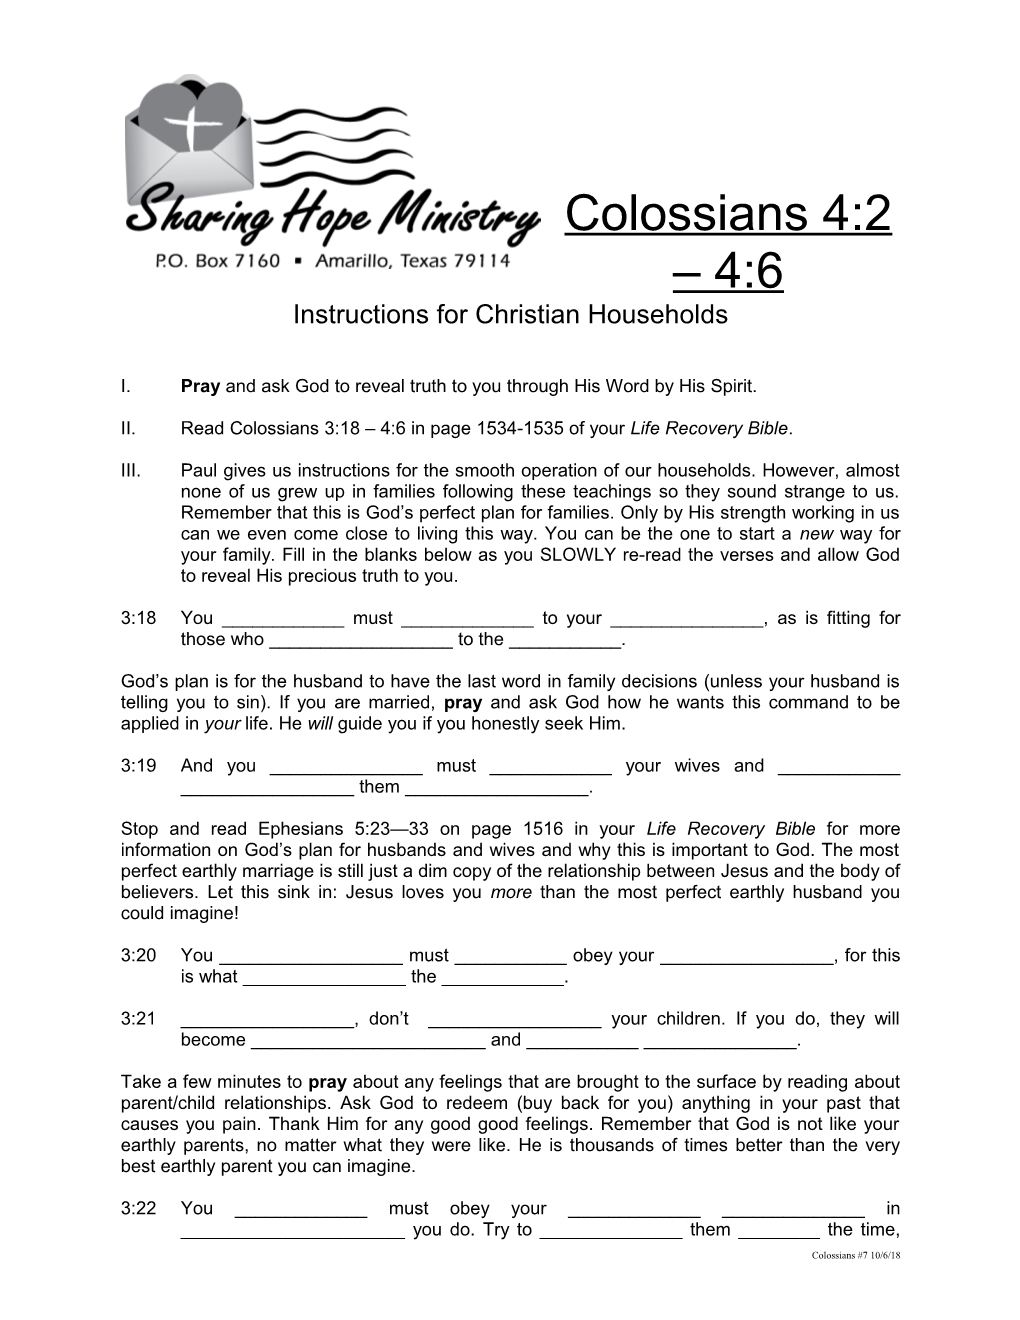 Instructions for Christian Households